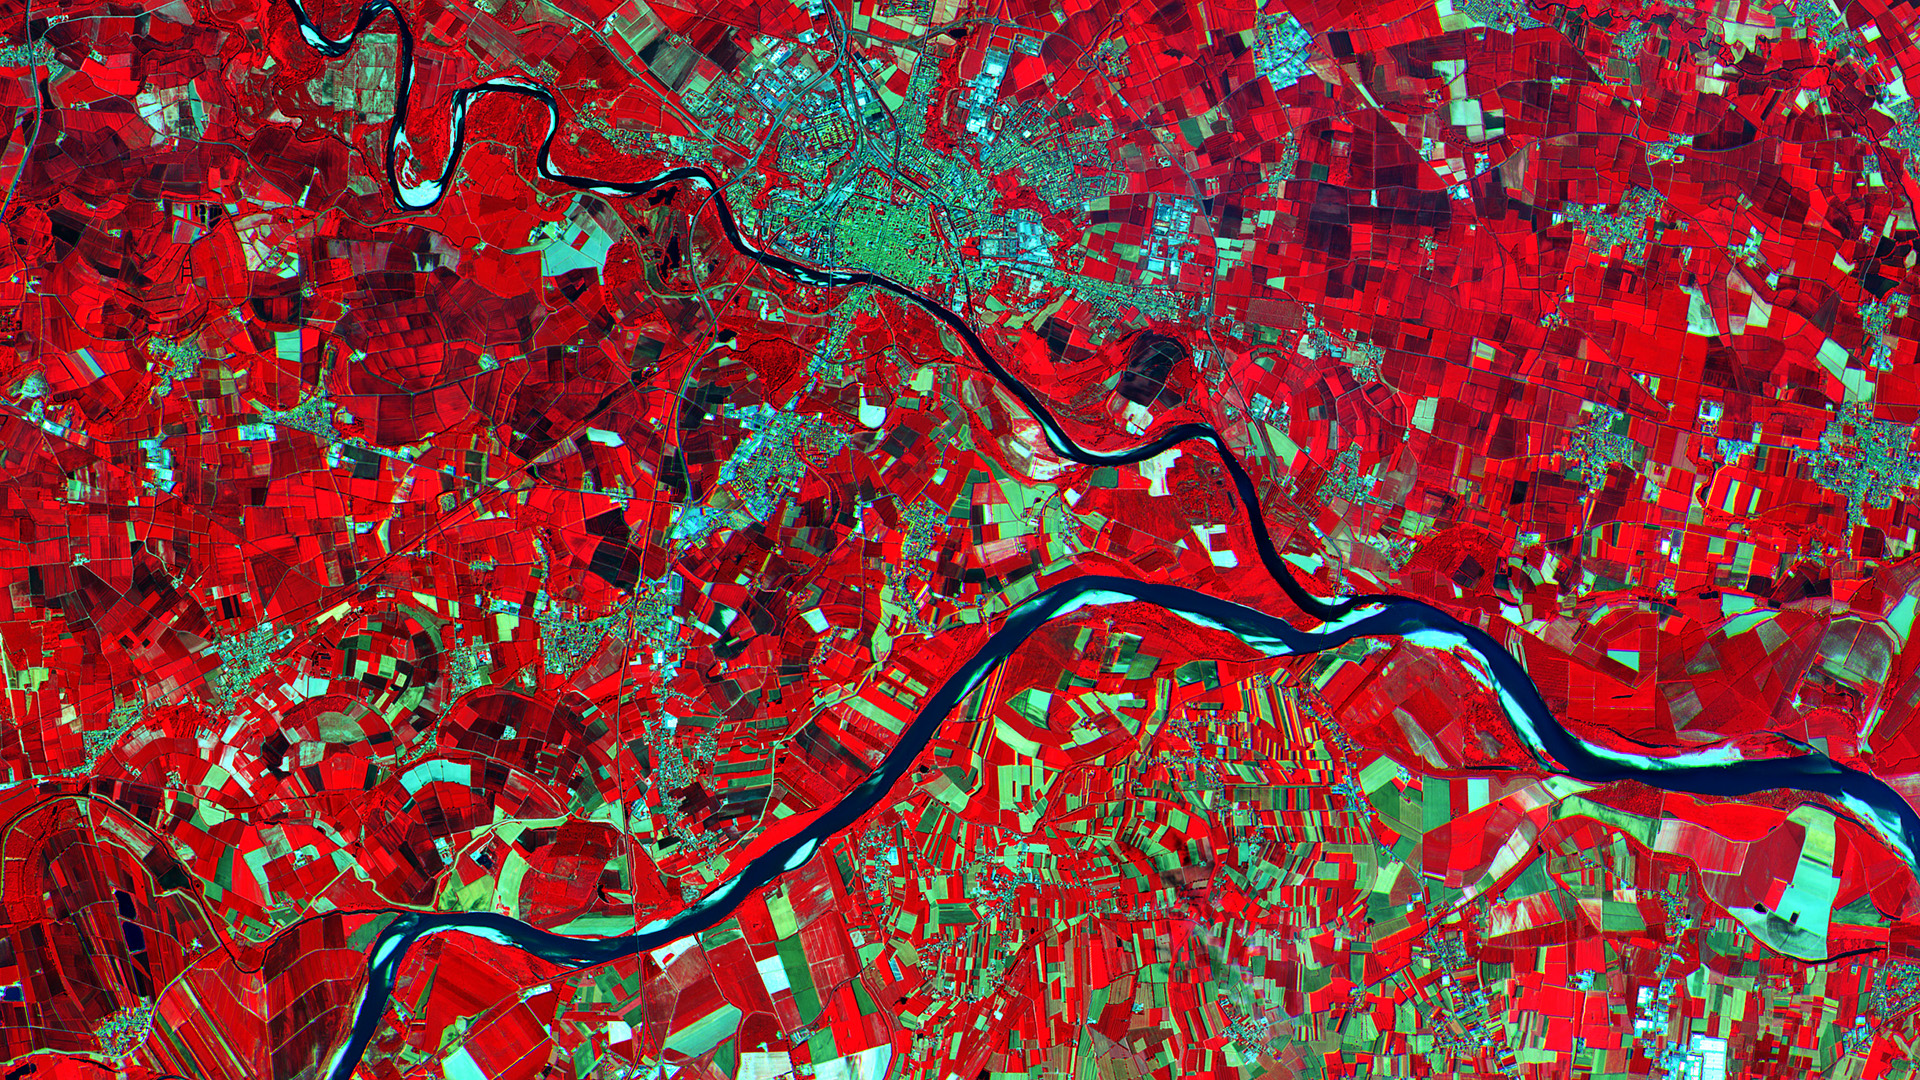 Immagine ripresa dal satellite ESA Sentinel 2A